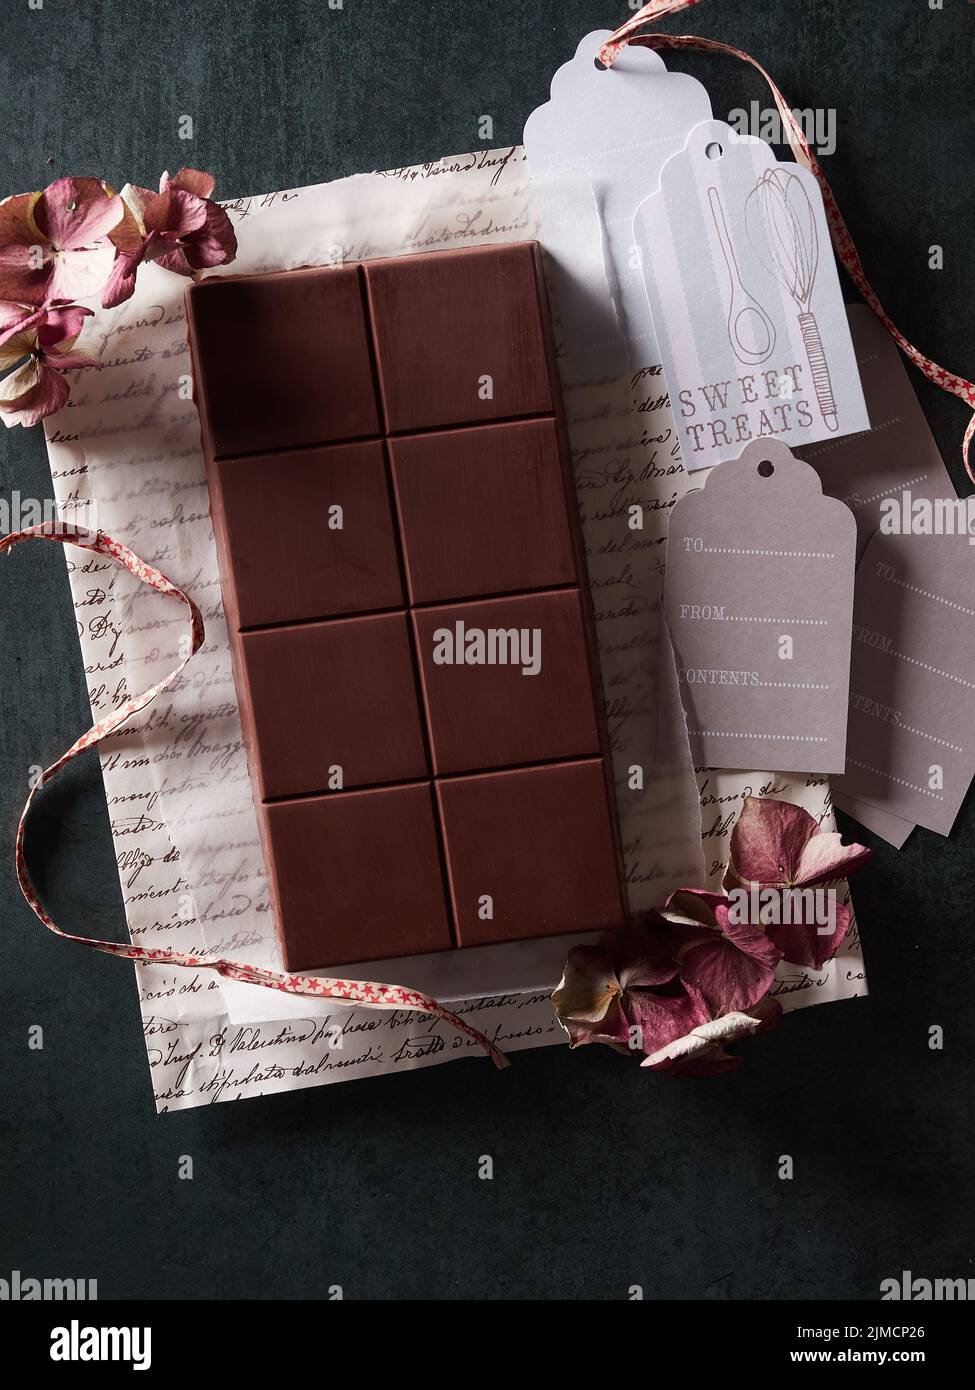 Vista superior de la sabrosa barra de chocolate dulce en envoltorio de regalo con flores secas y etiquetas sobre fondo oscuro en la habitación Foto de stock